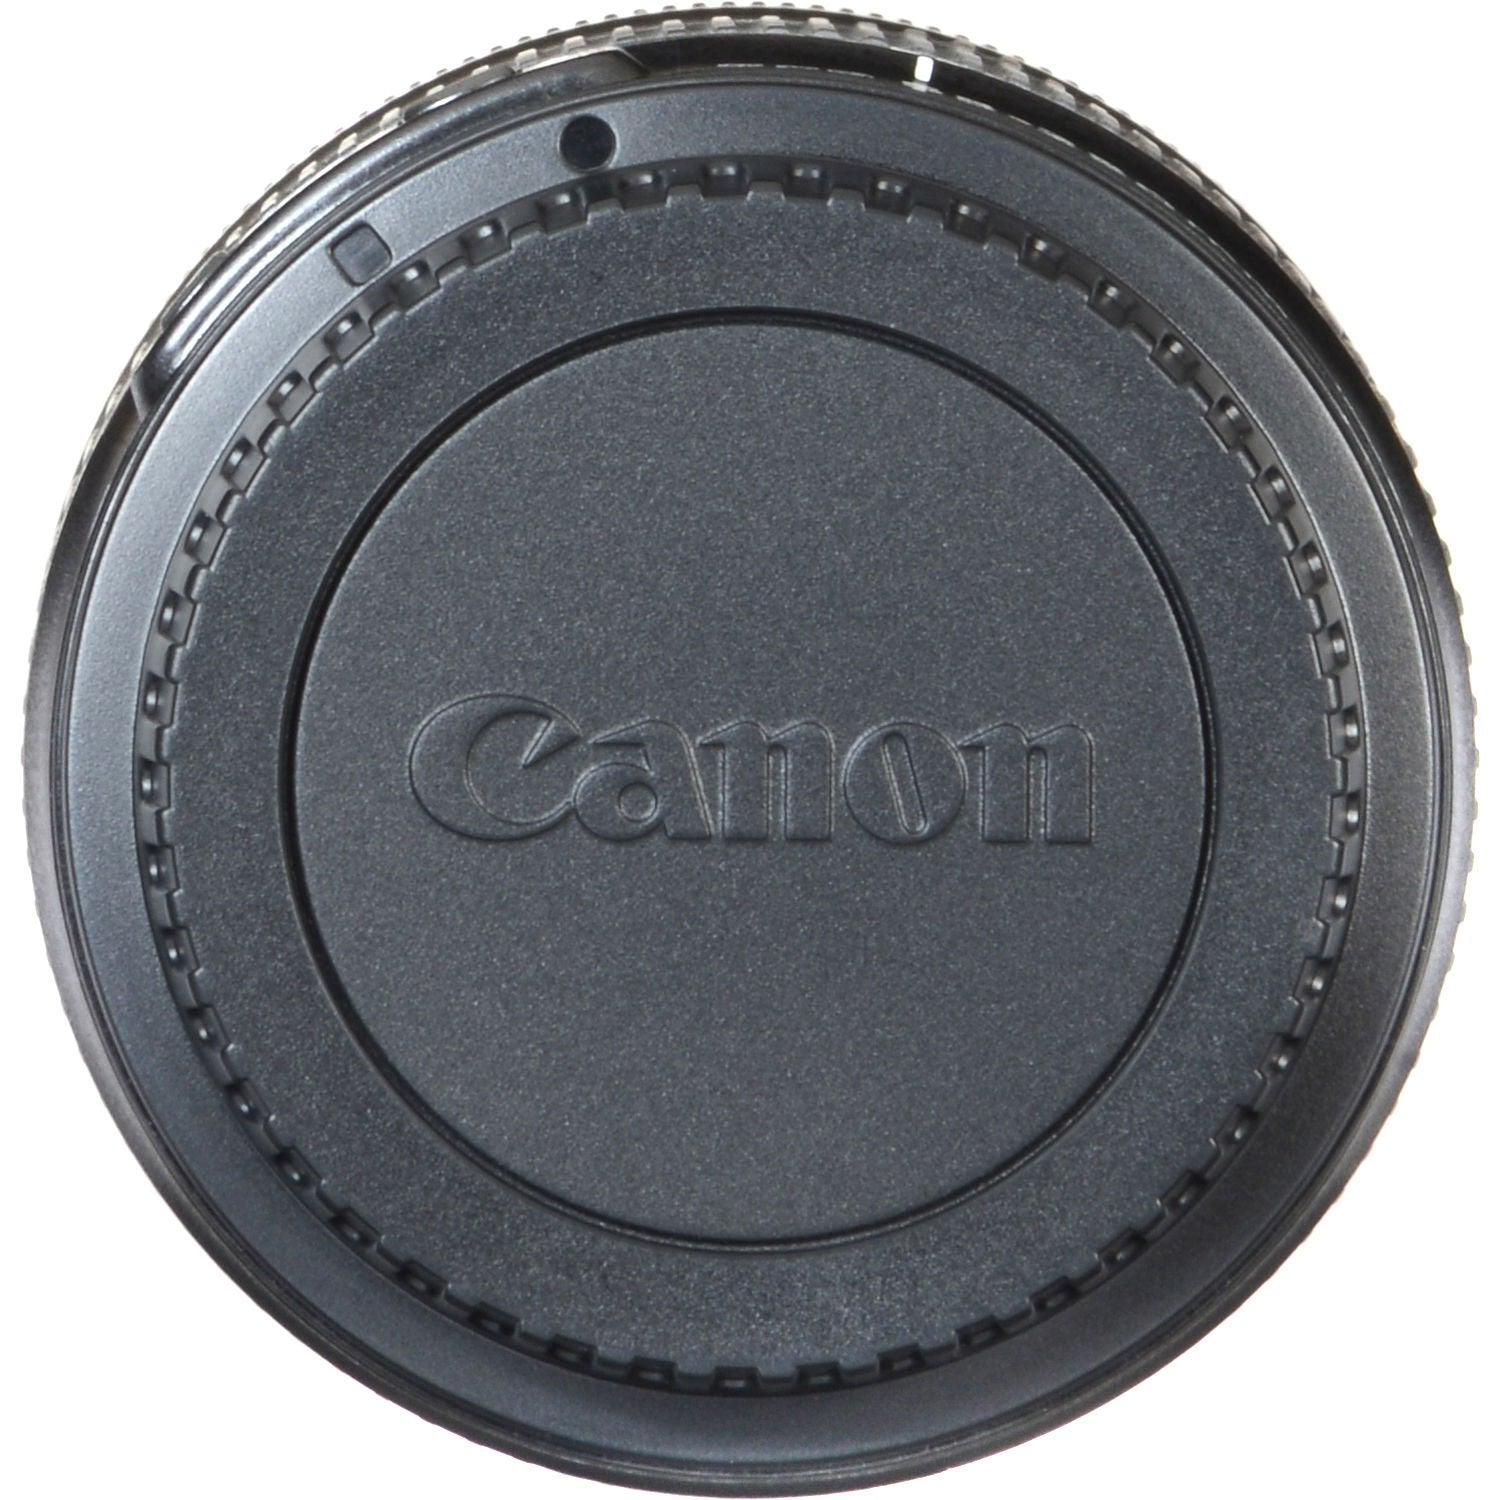 Canon EF-S 55-250mm F4-5.6 is STM Lens for SLR Cameras, 4.5x Optical Zoom, Black